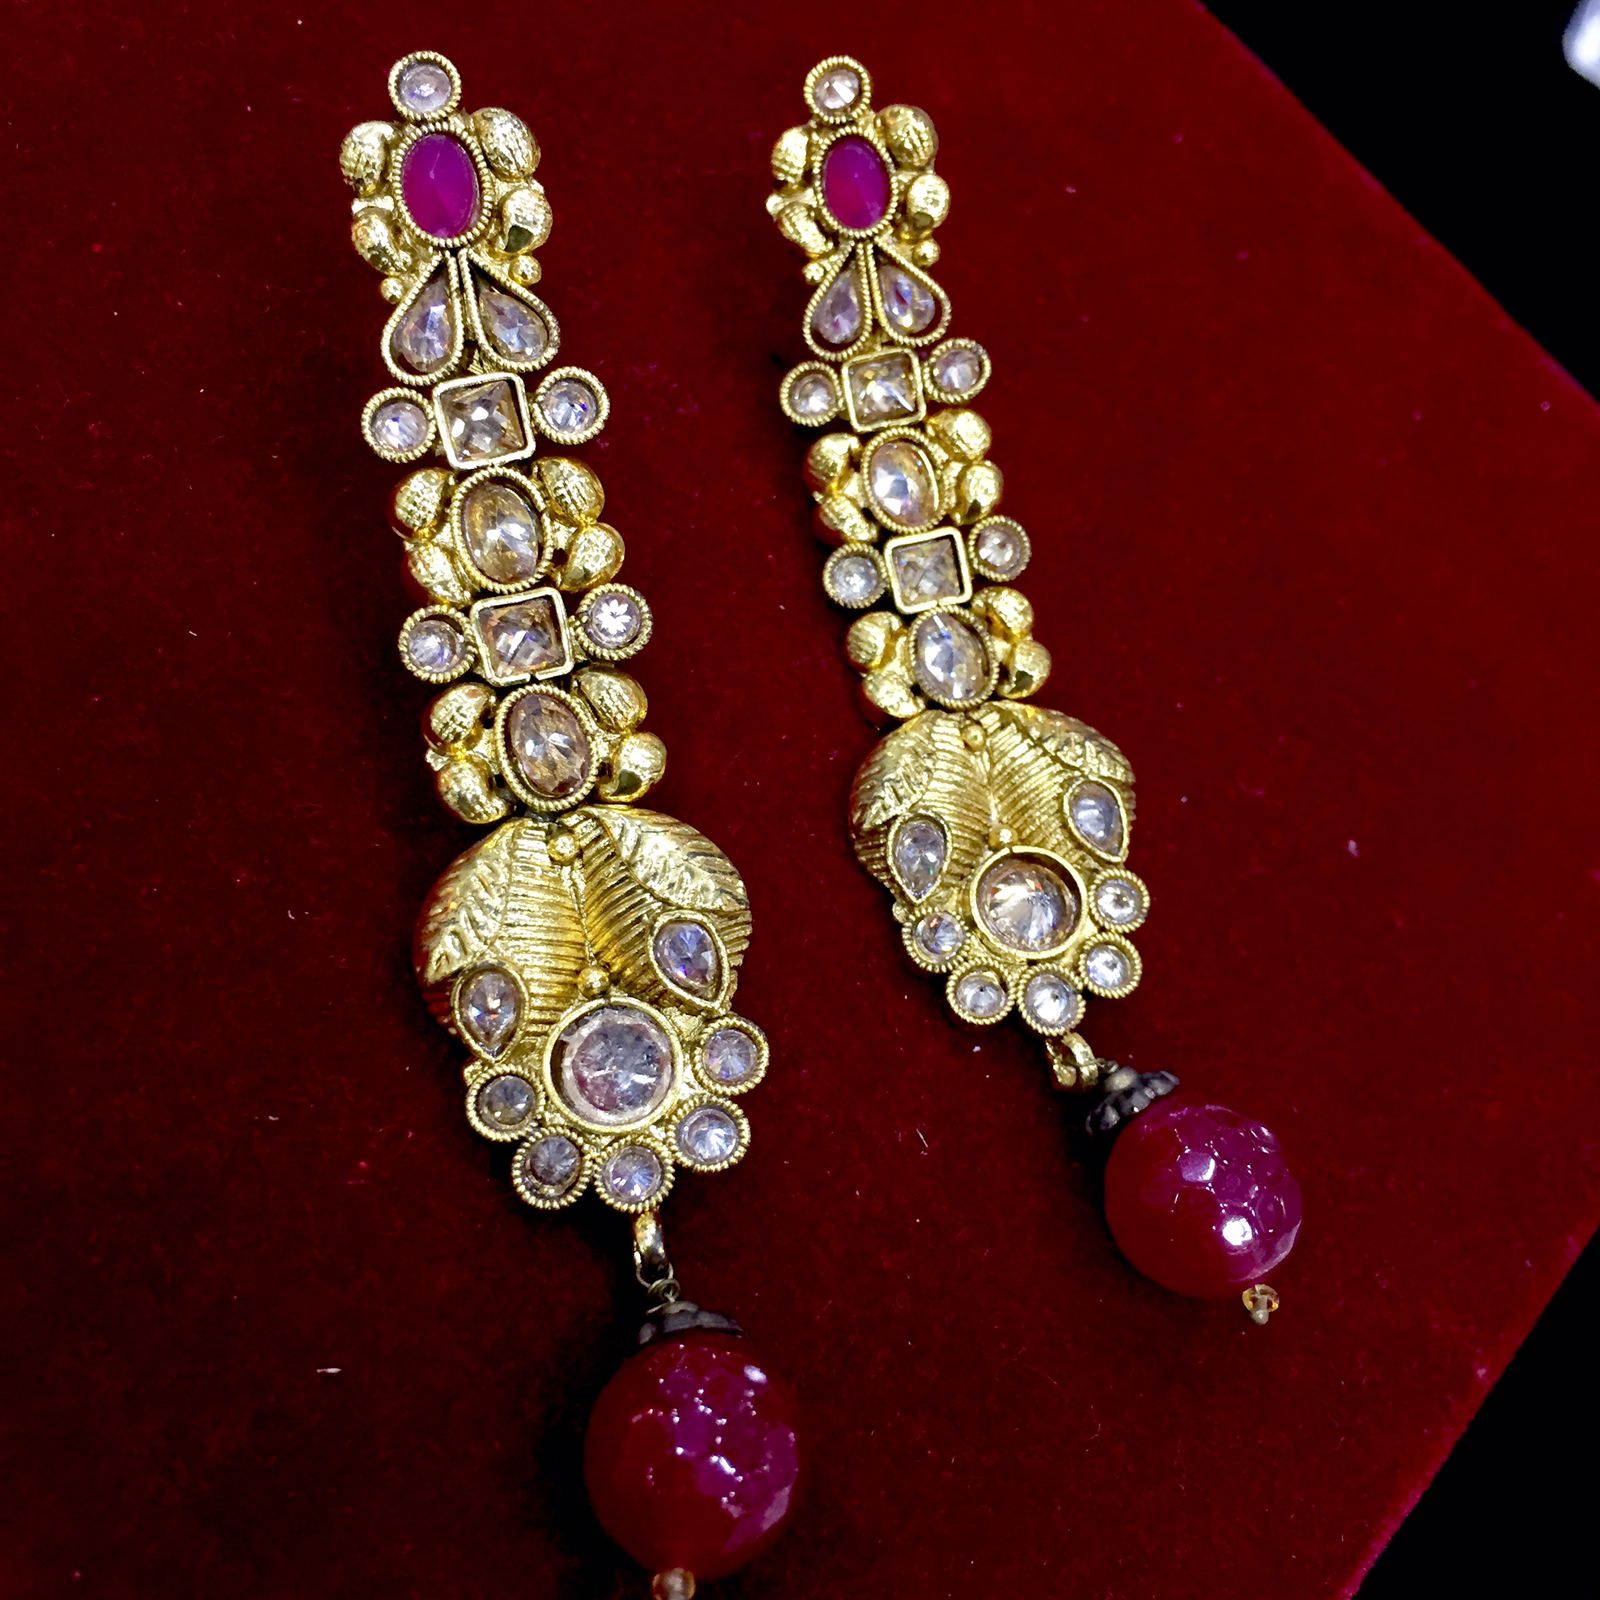 Antique earrings 45564 - Vijay & Sons